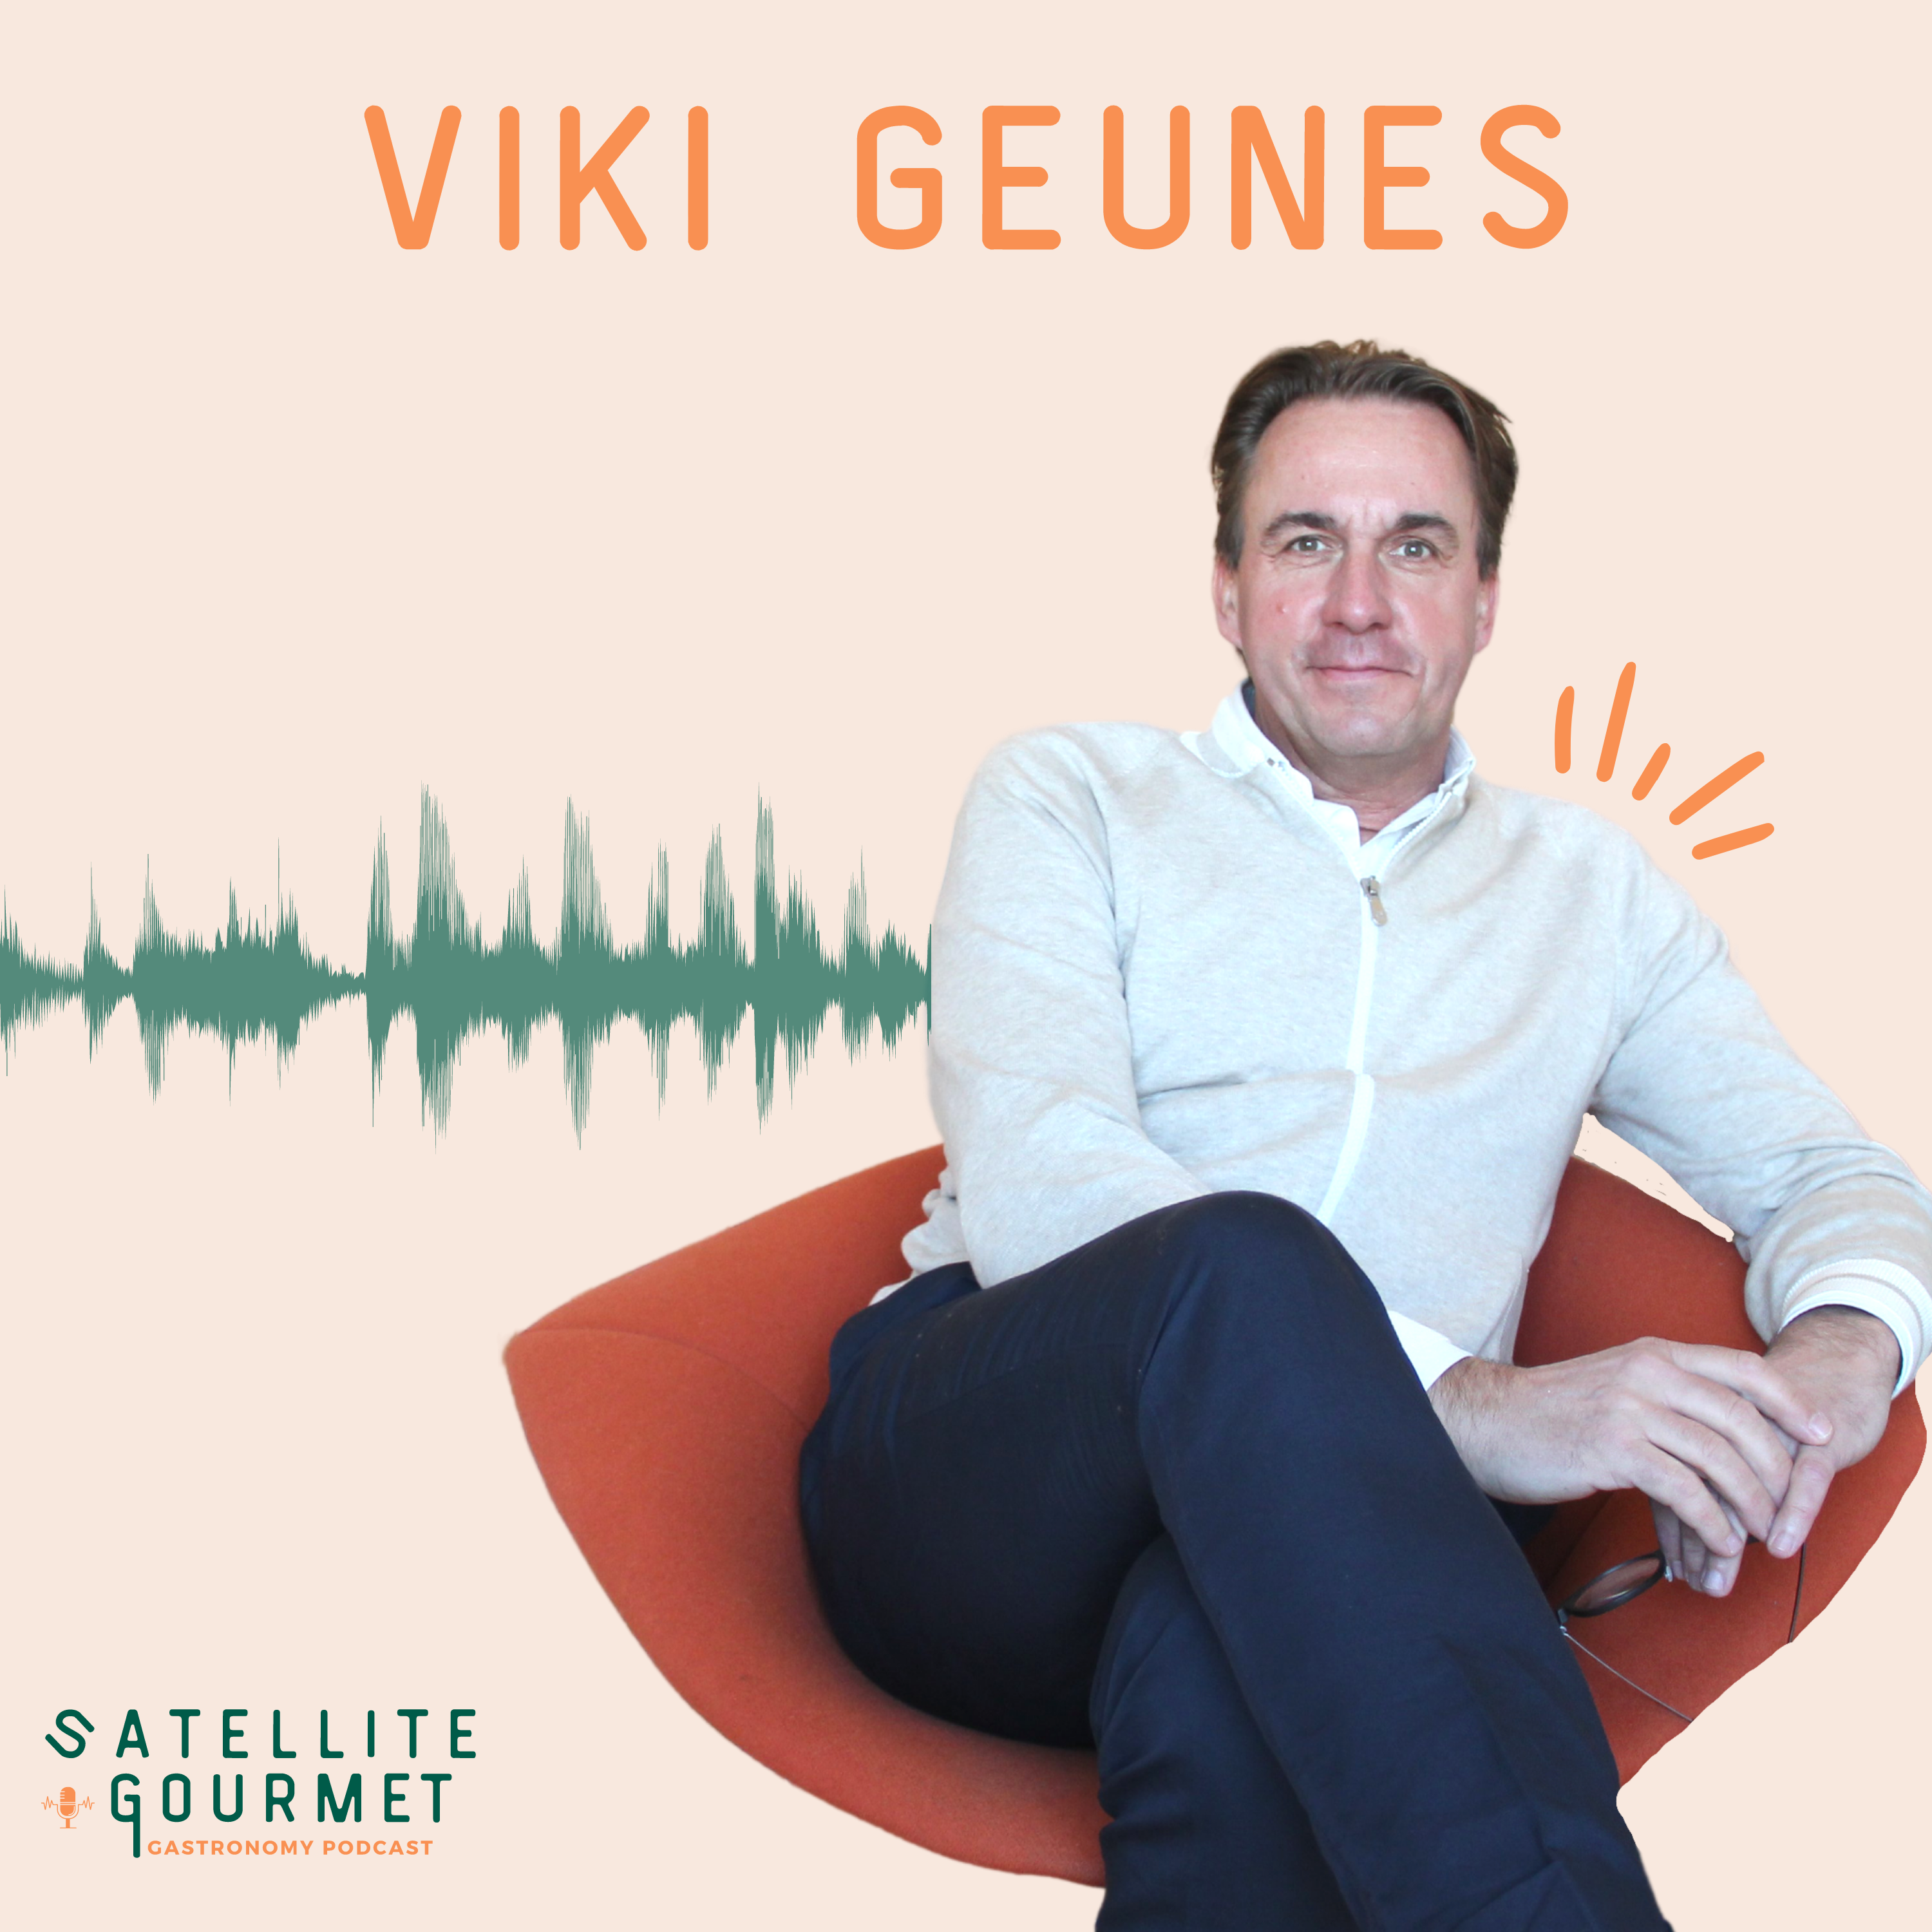 Viki Geunes